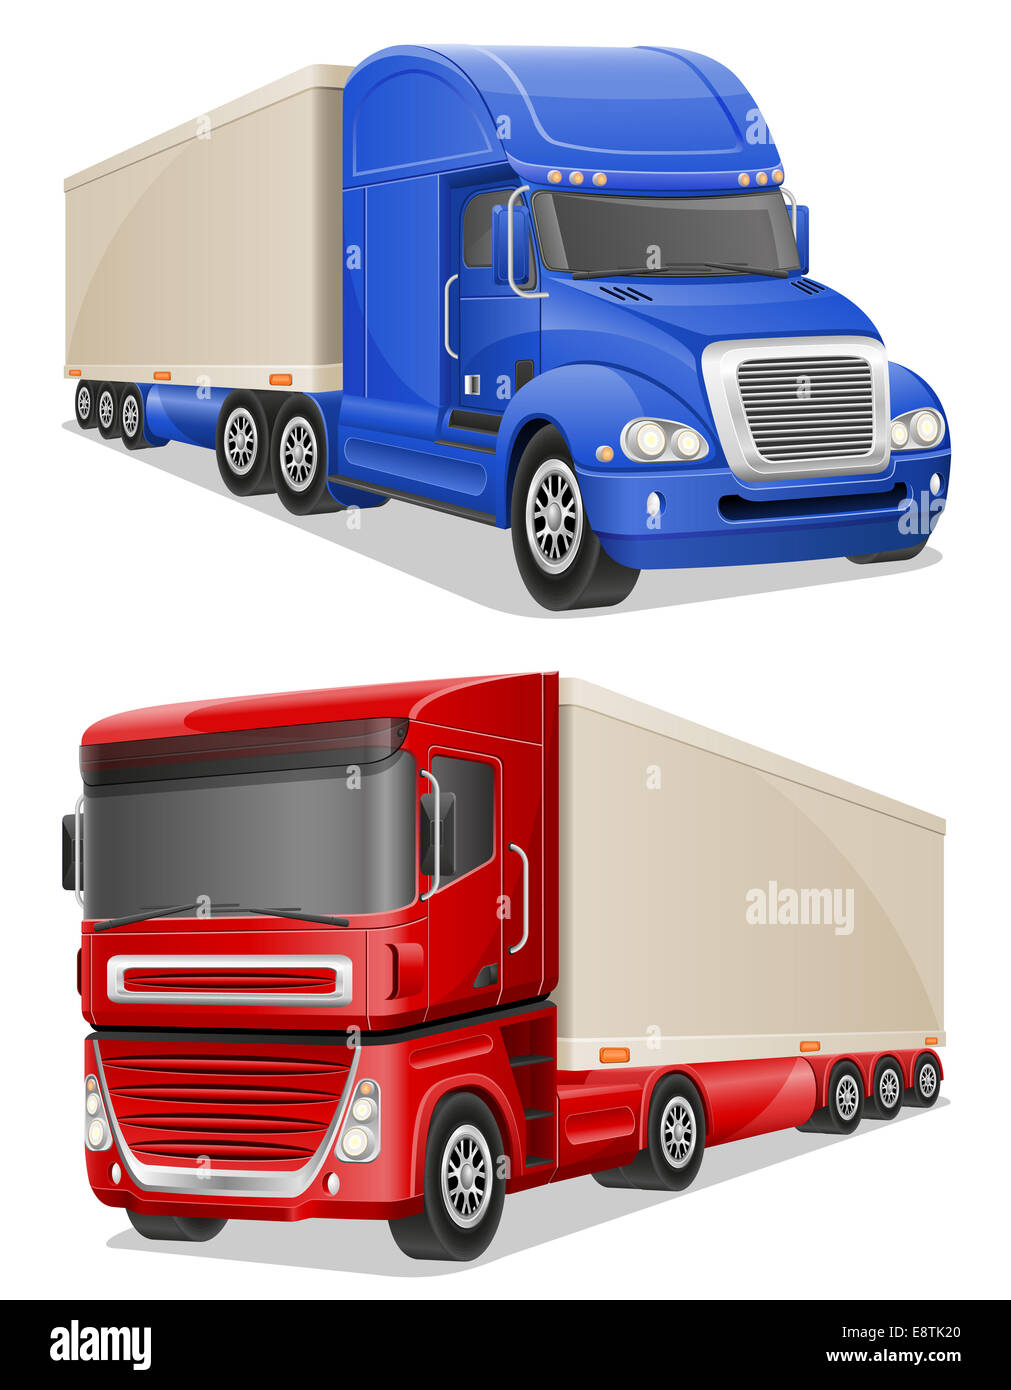 Grand bleu et rouge camions illustration isolé sur fond blanc Banque D'Images